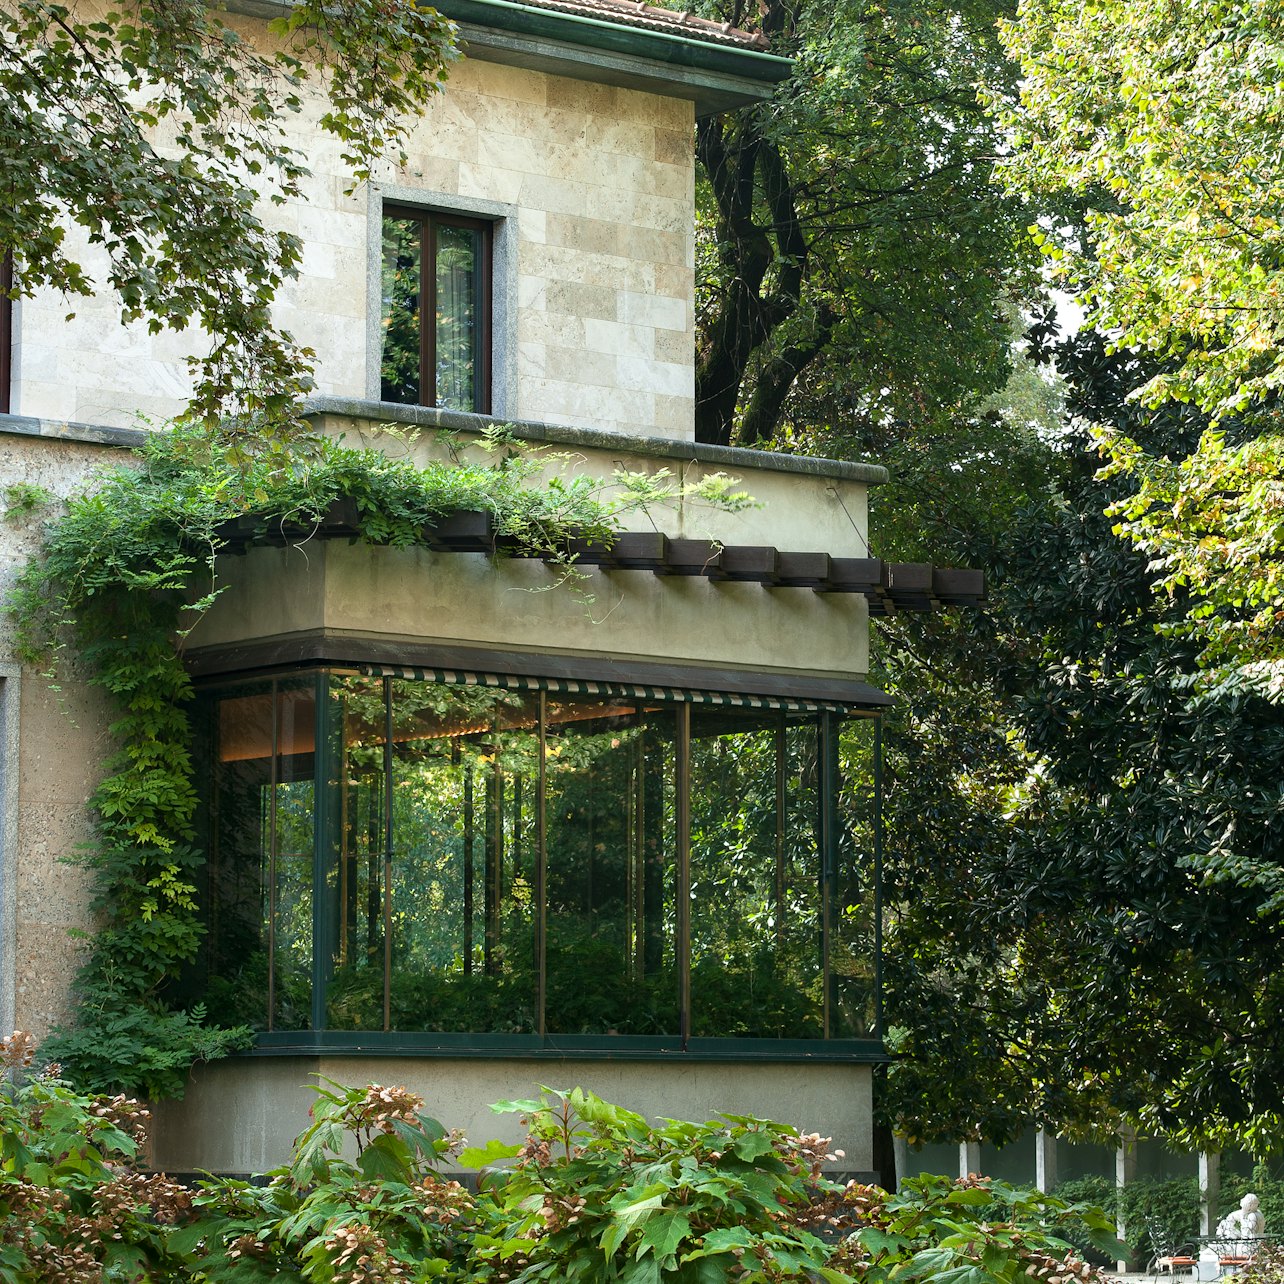 Villa Necchi Campiglio - Accommodations in Milan